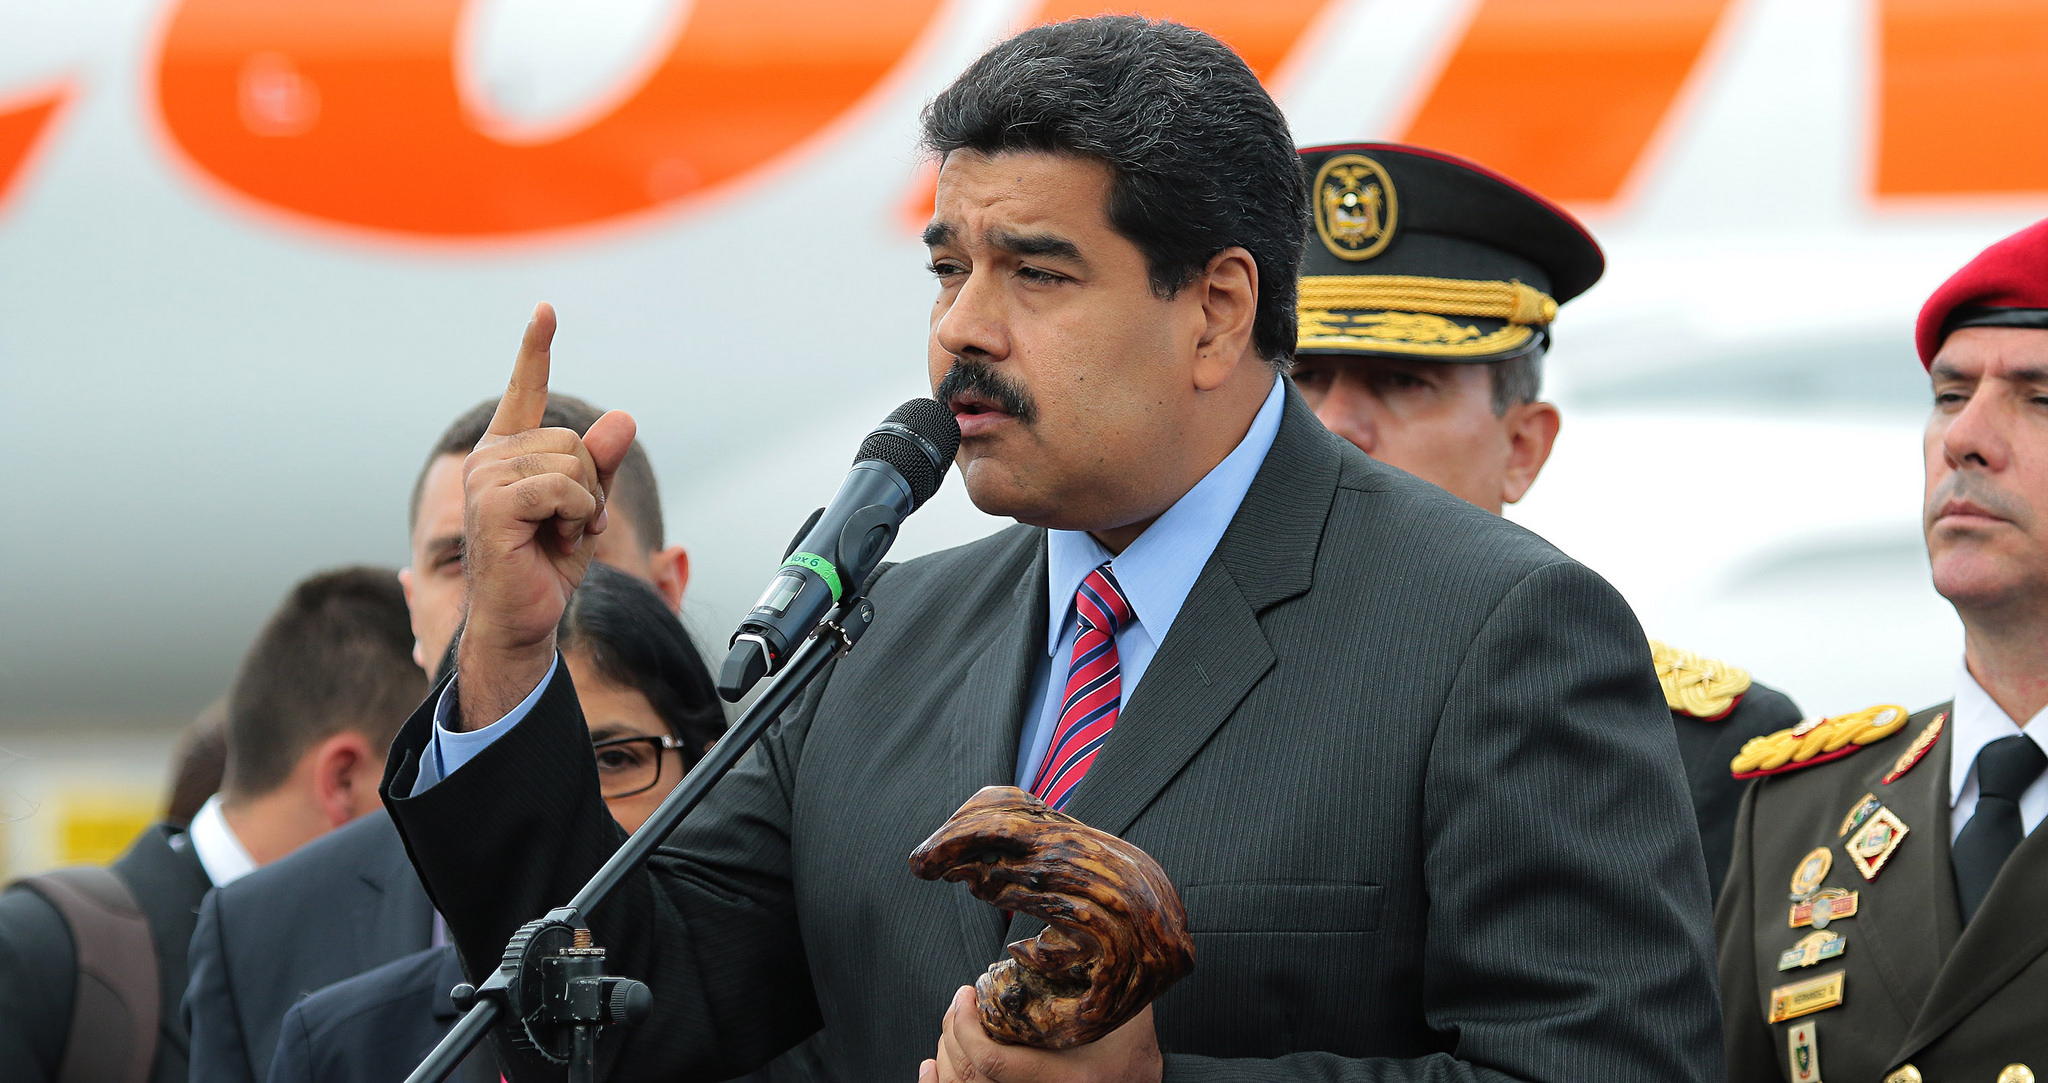 Le président vénézuélien Nicolas Maduro a annoncé vendredi des mesures économiques, dont l'augmentation du salaire minimum national